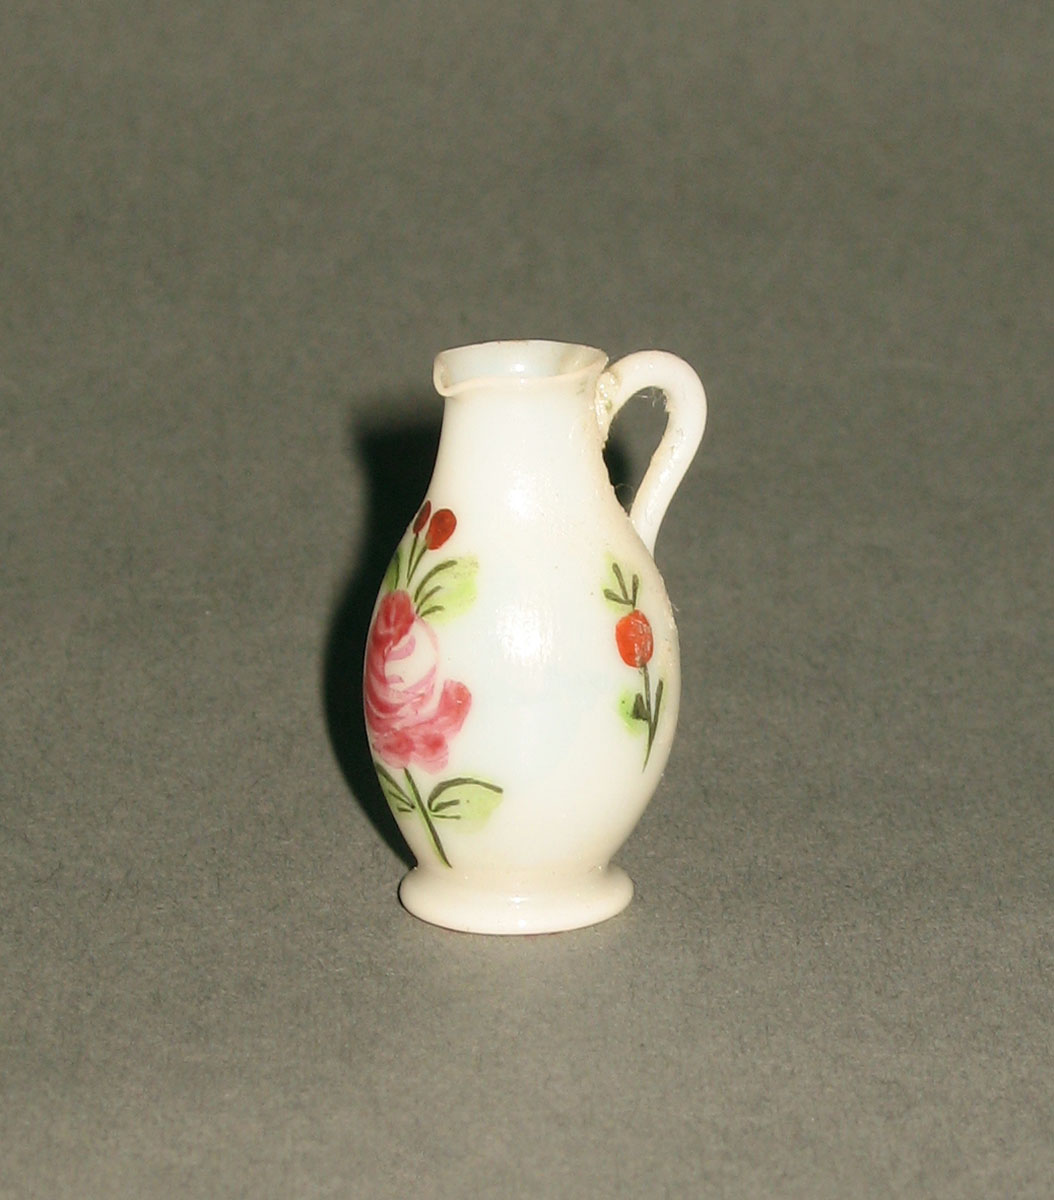 1959.0998.004 Miniature glass jug